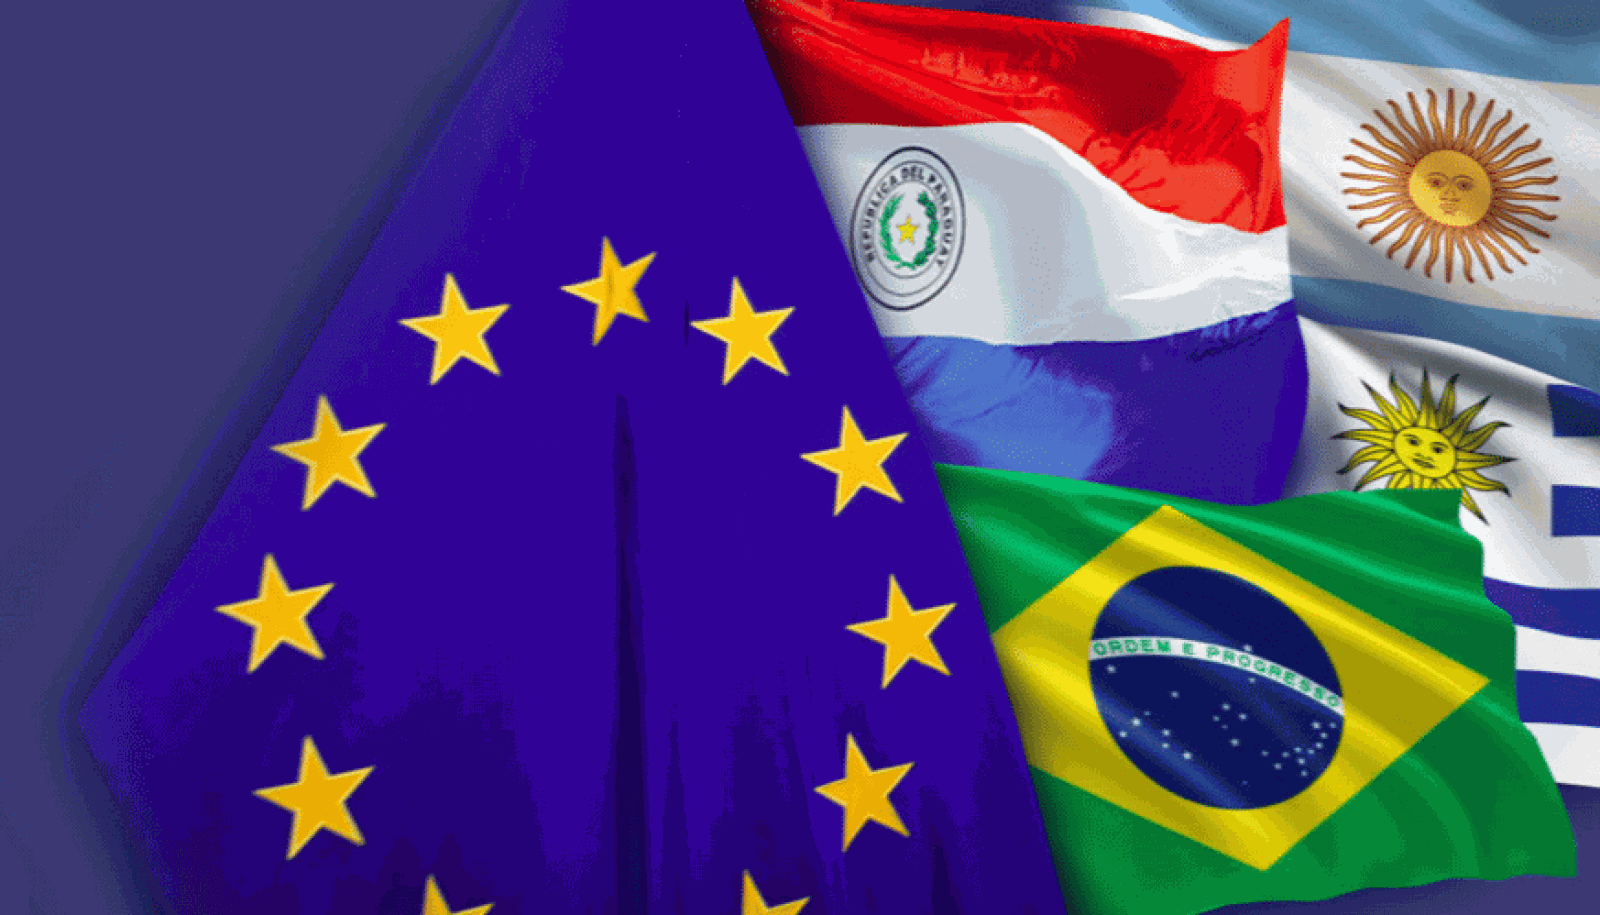 Europa abierta - España empuja para salvar el acuerdo UE-Mercosur - escuchar ahora